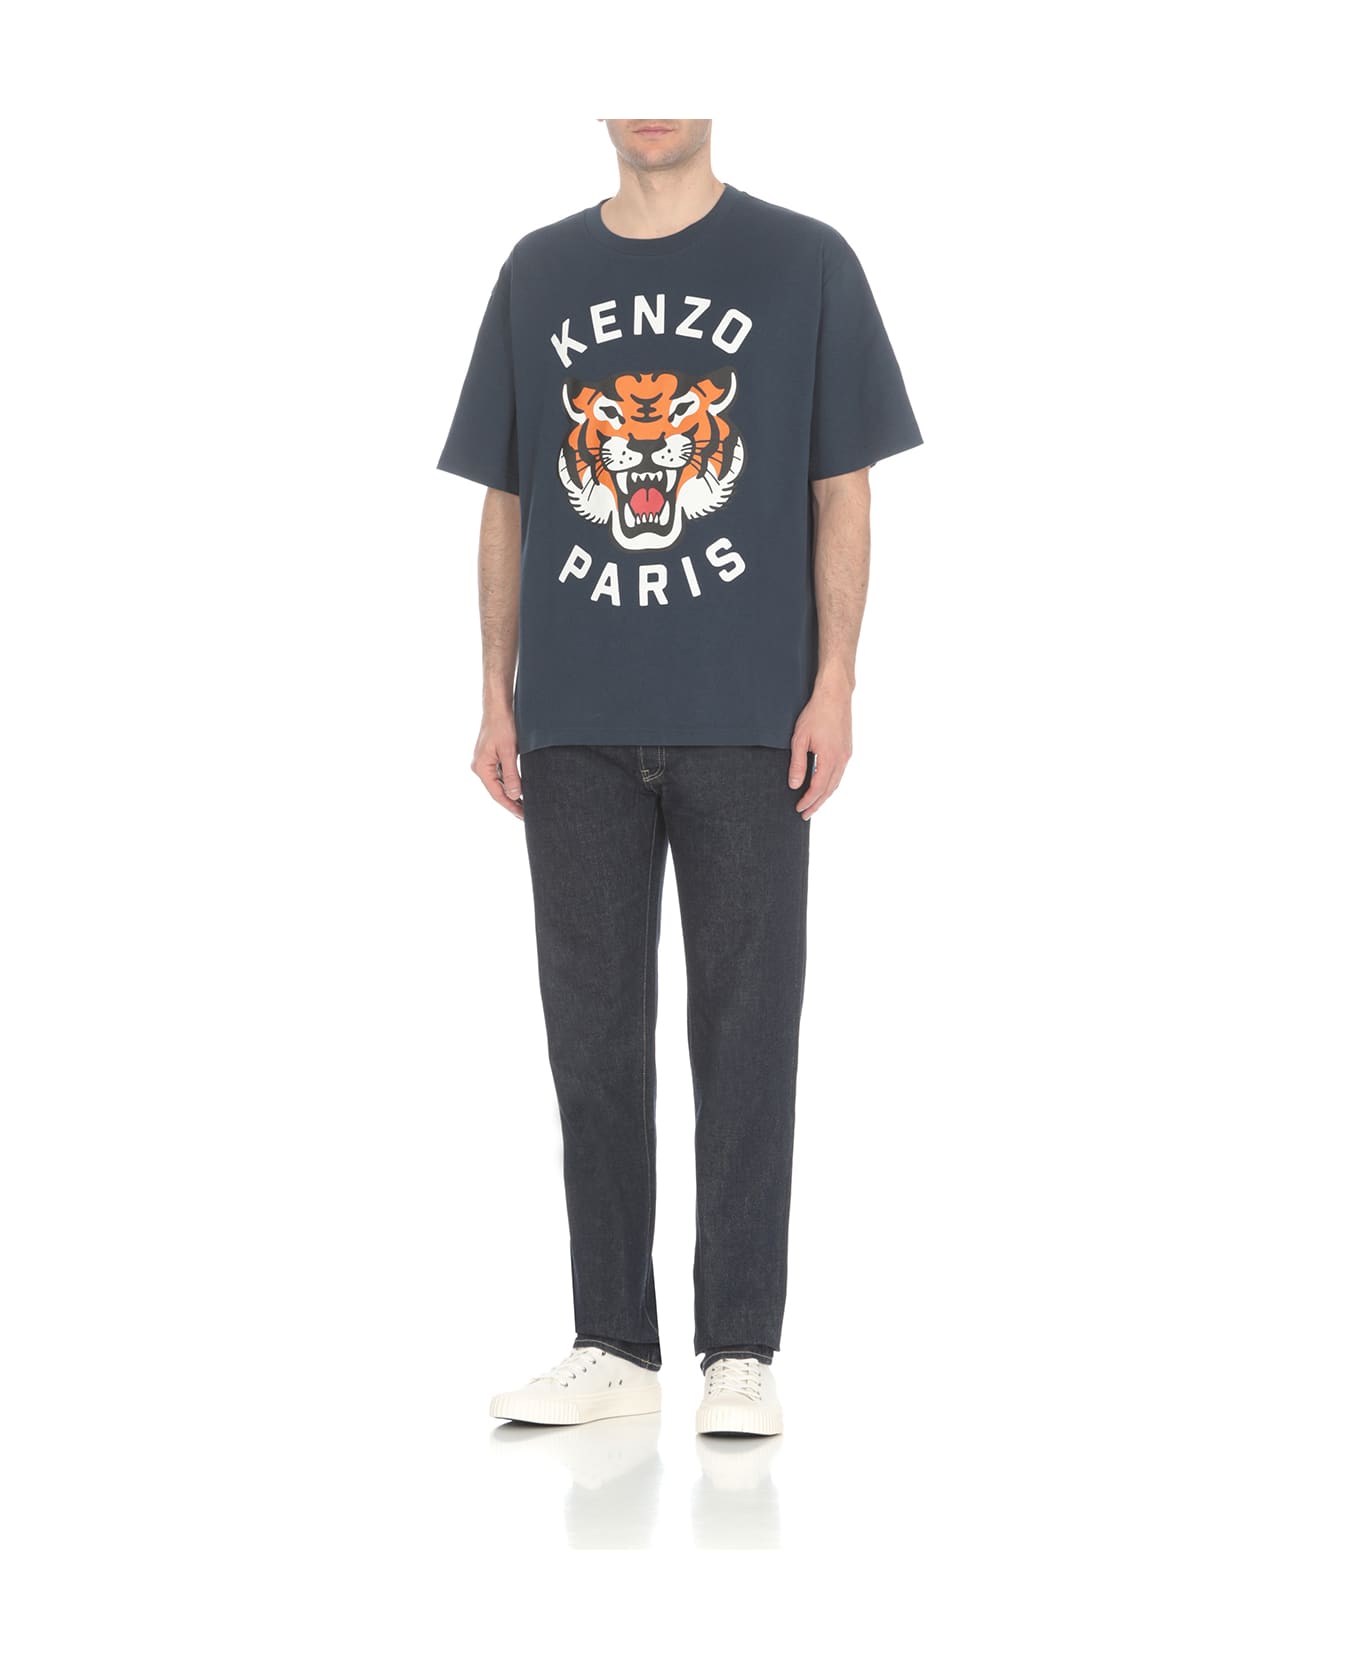 Kenzo Lucky Tiger T-shirt - Blue